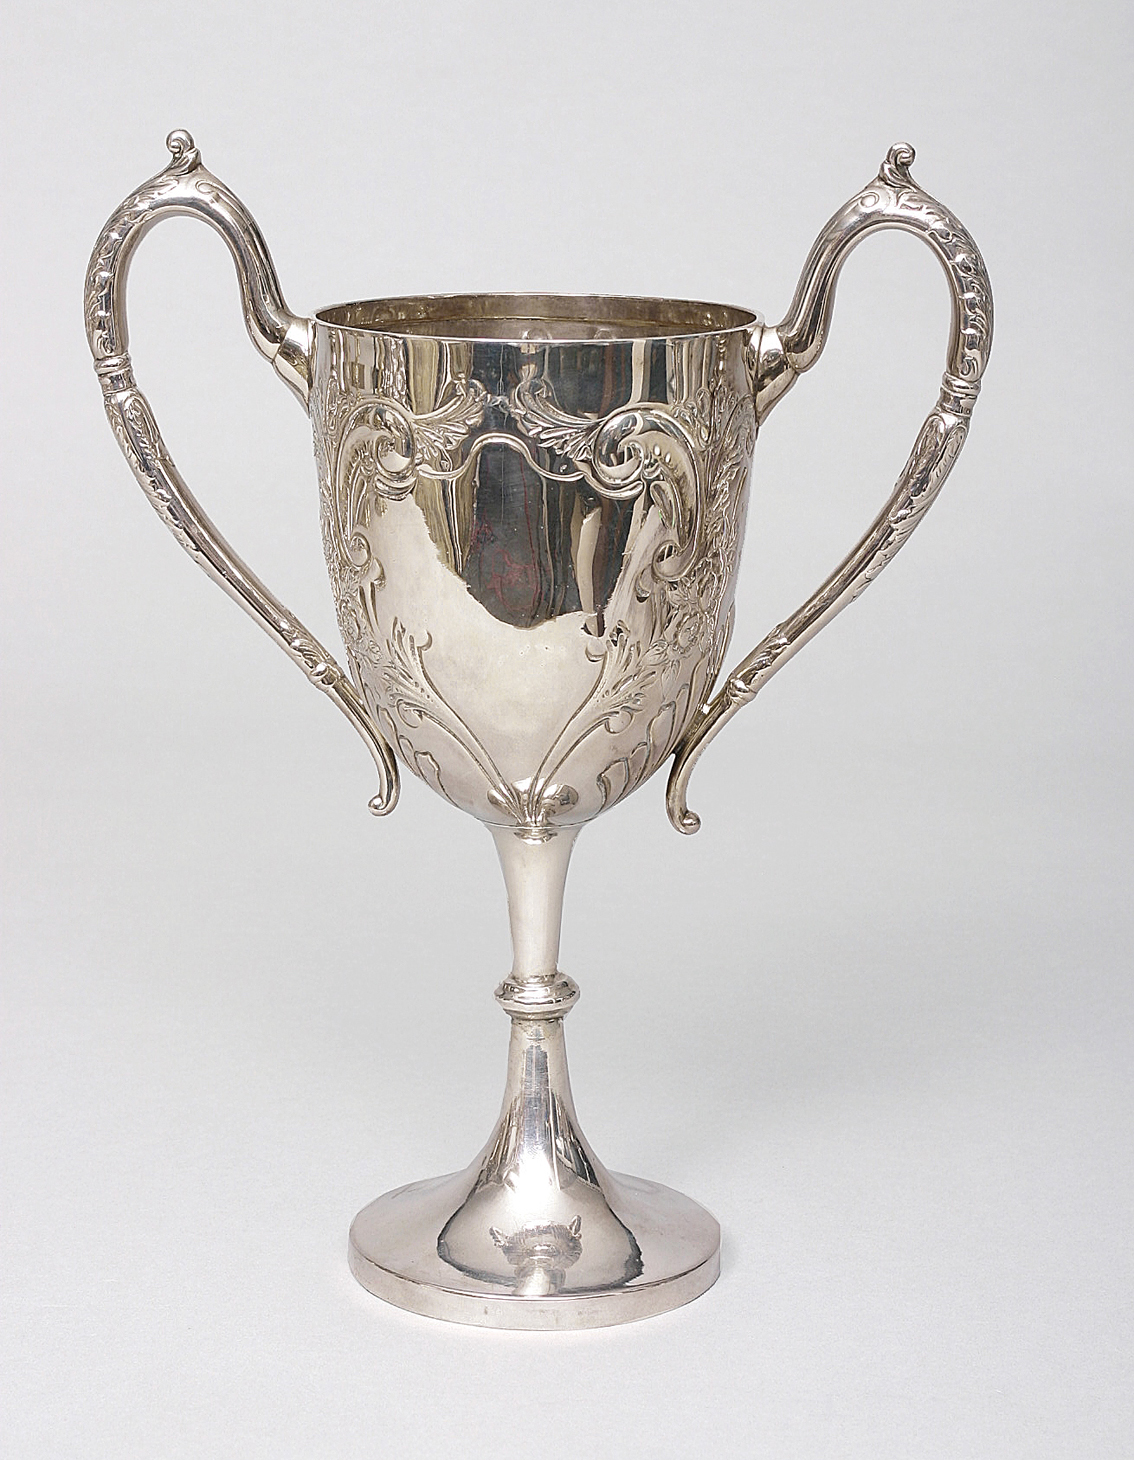 An English Art-Nouveau goblet